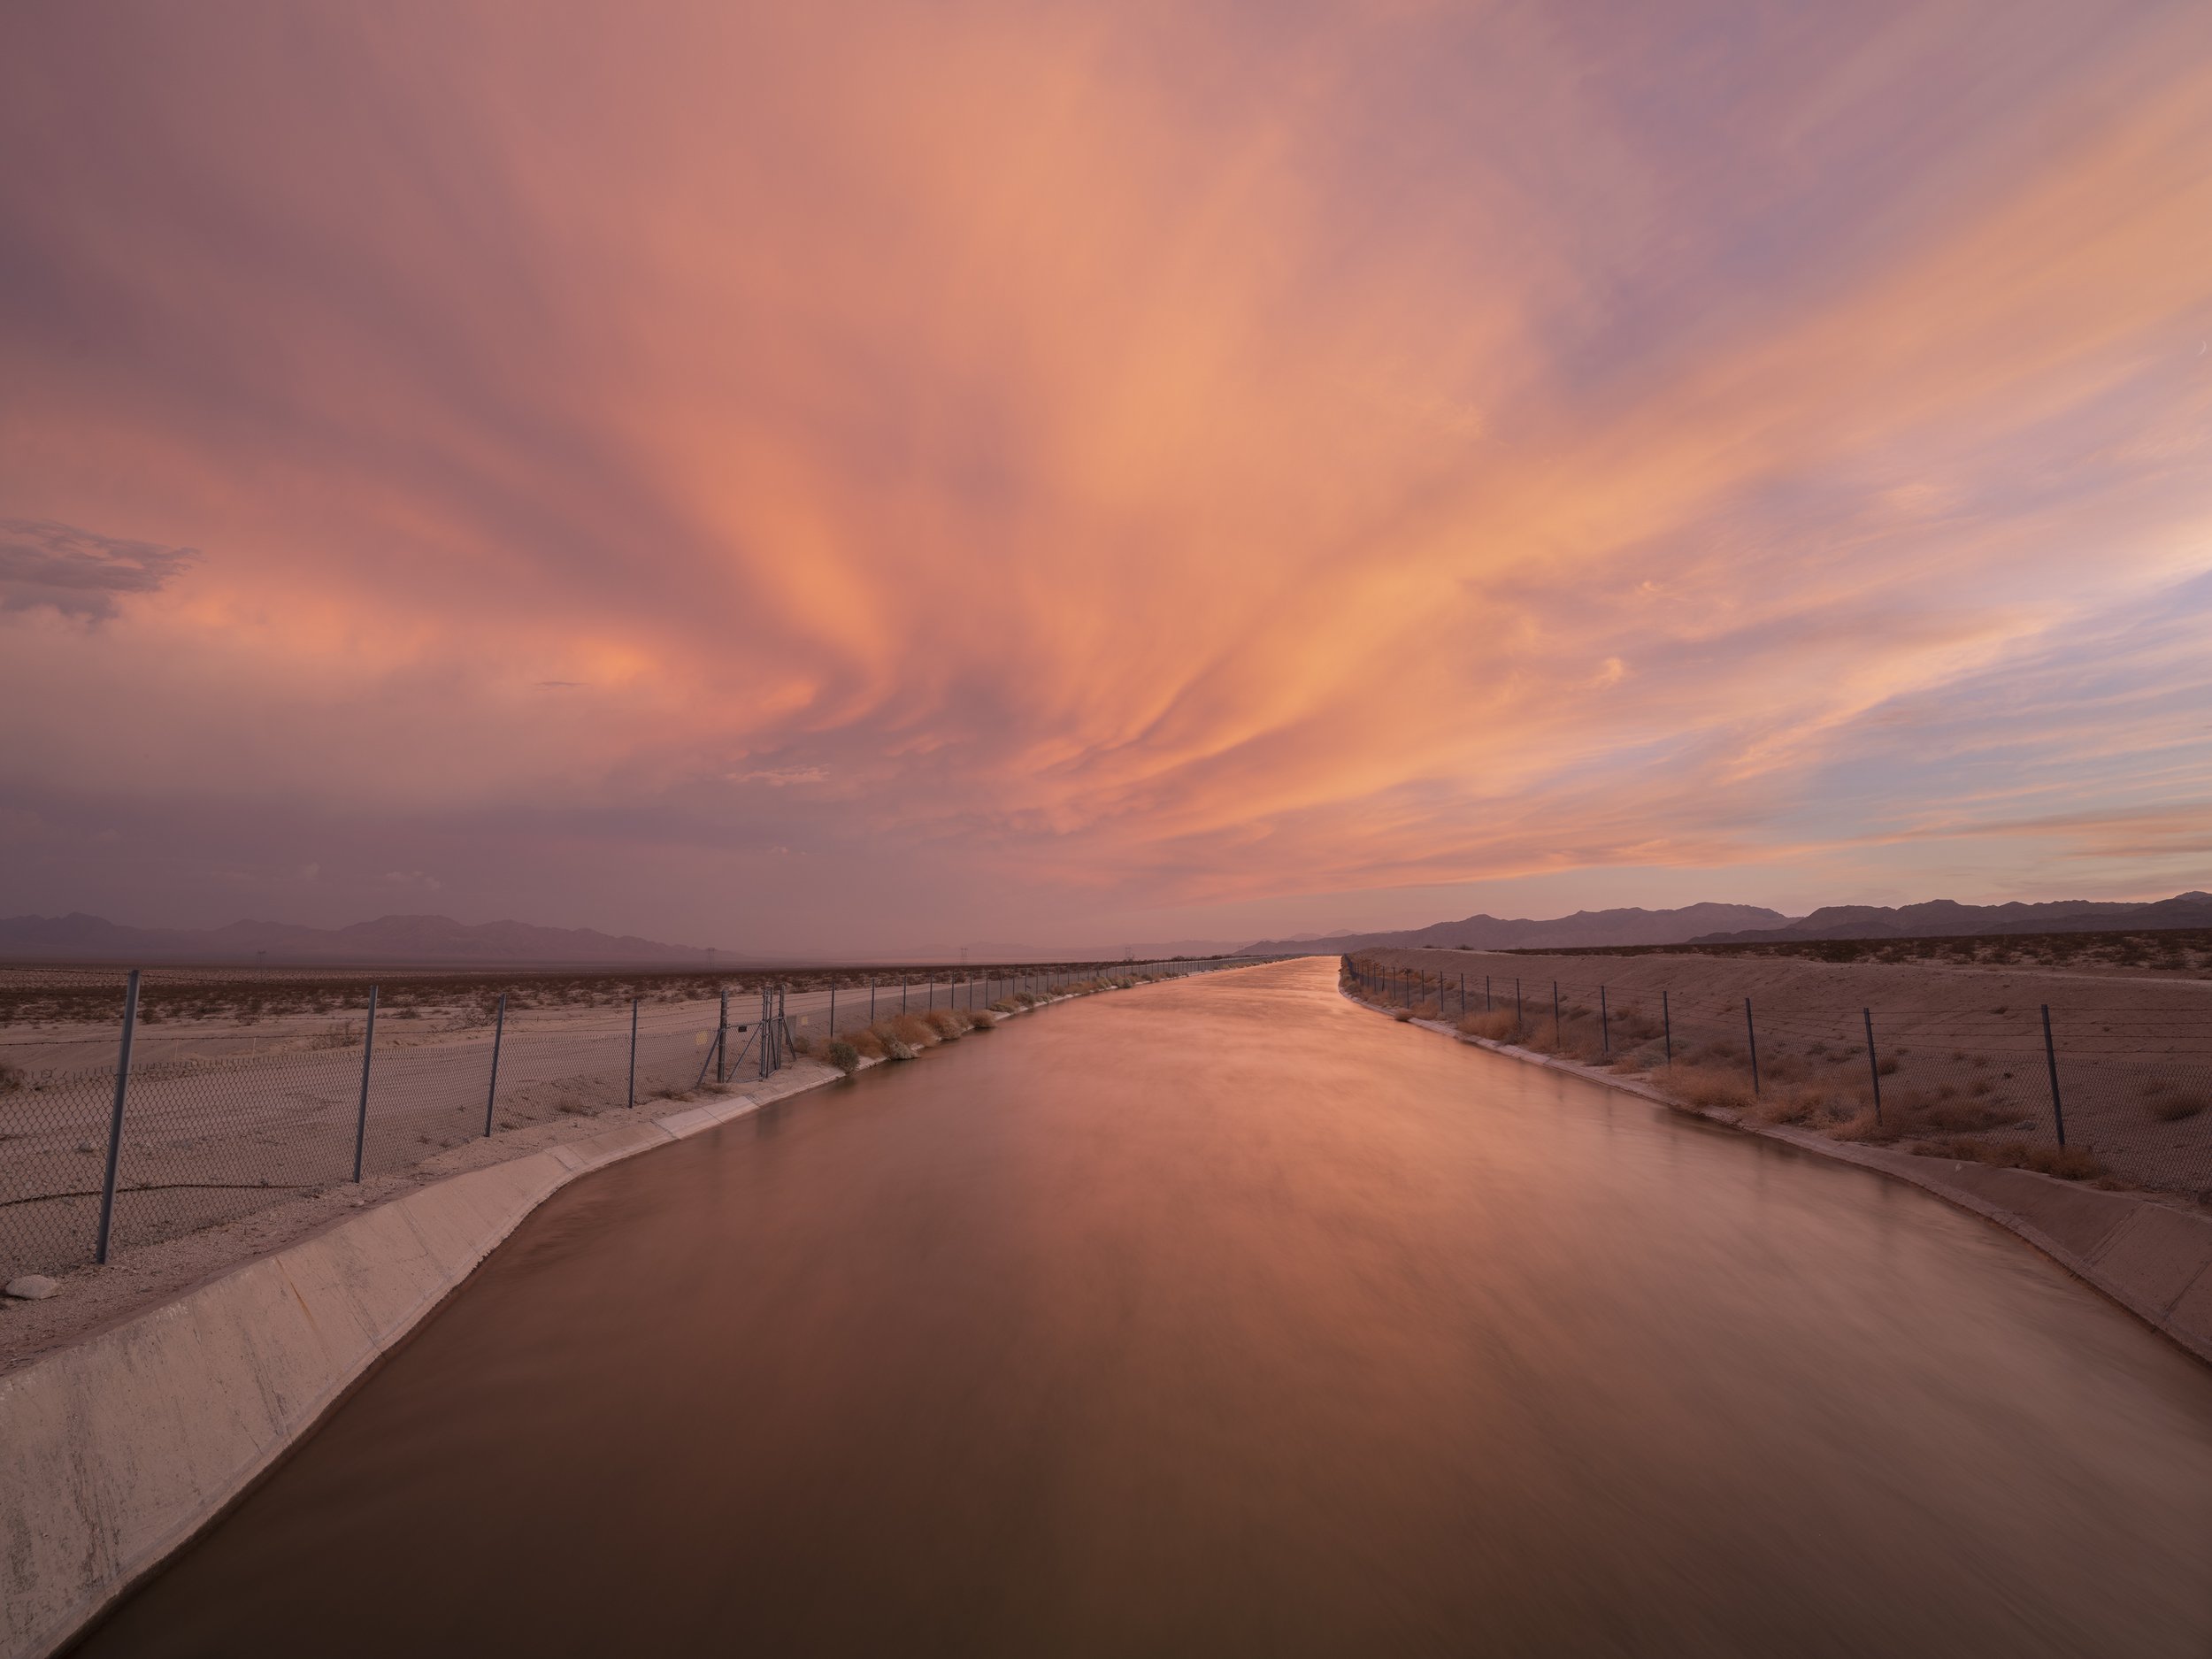  Colorado River Aqueduct. September 29, 2022 